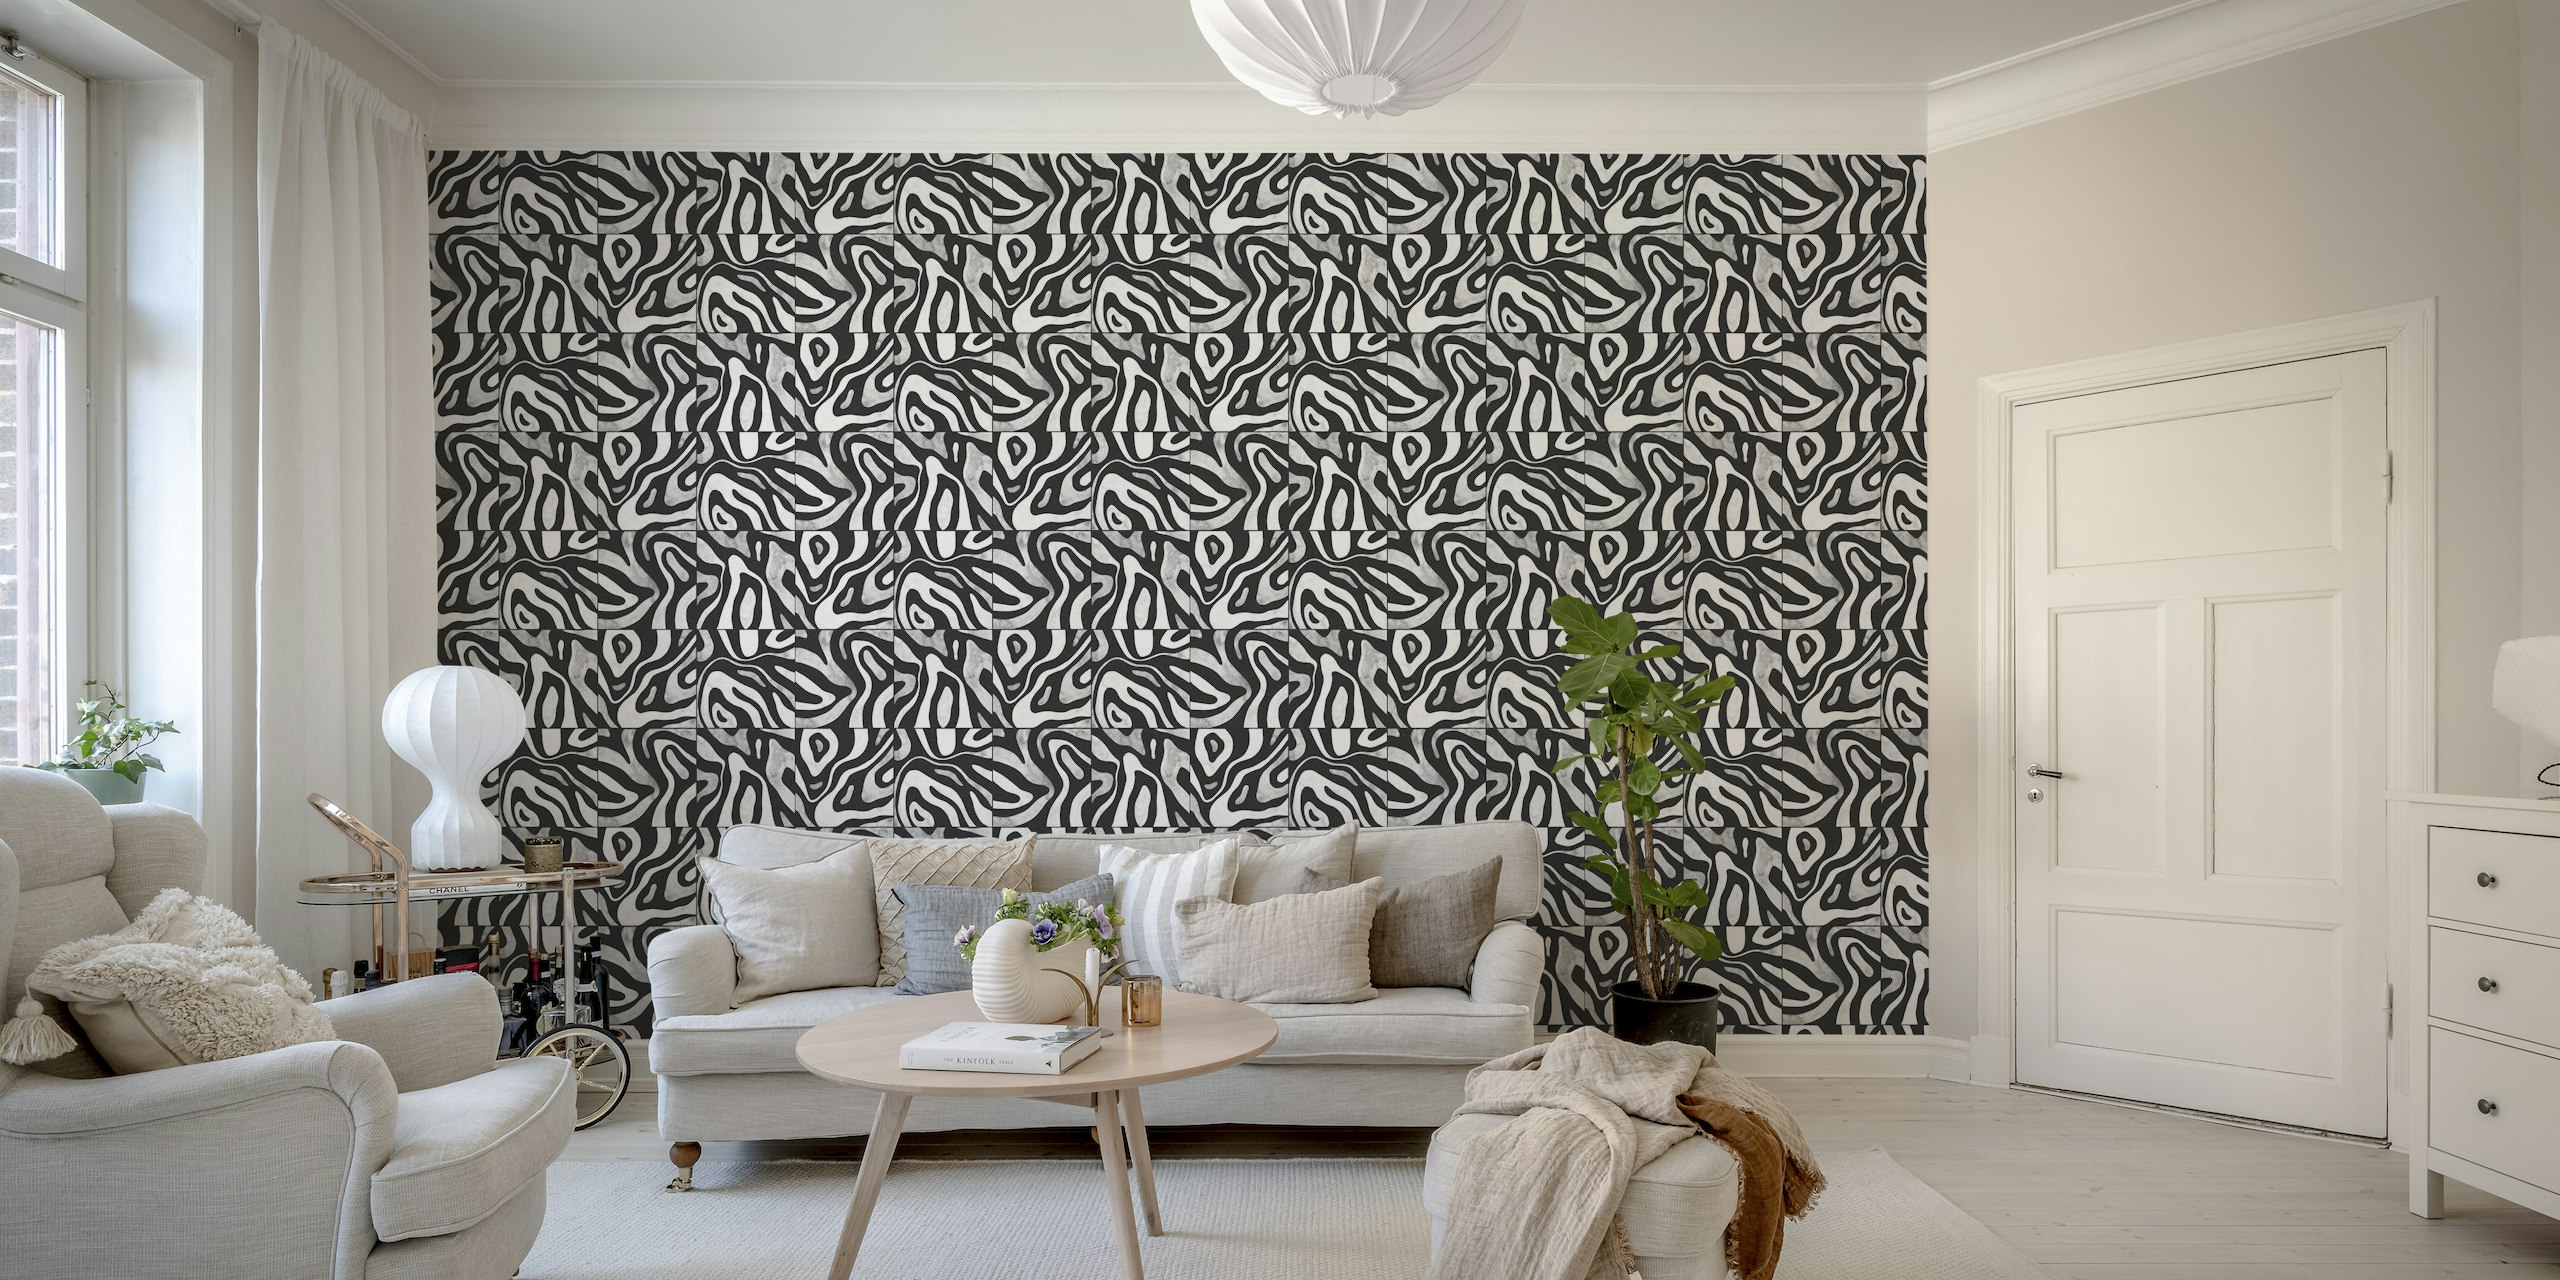 Abstract zwart-wit fotobehang met een patroon dat lijkt op heuvels, van bovenaf gezien